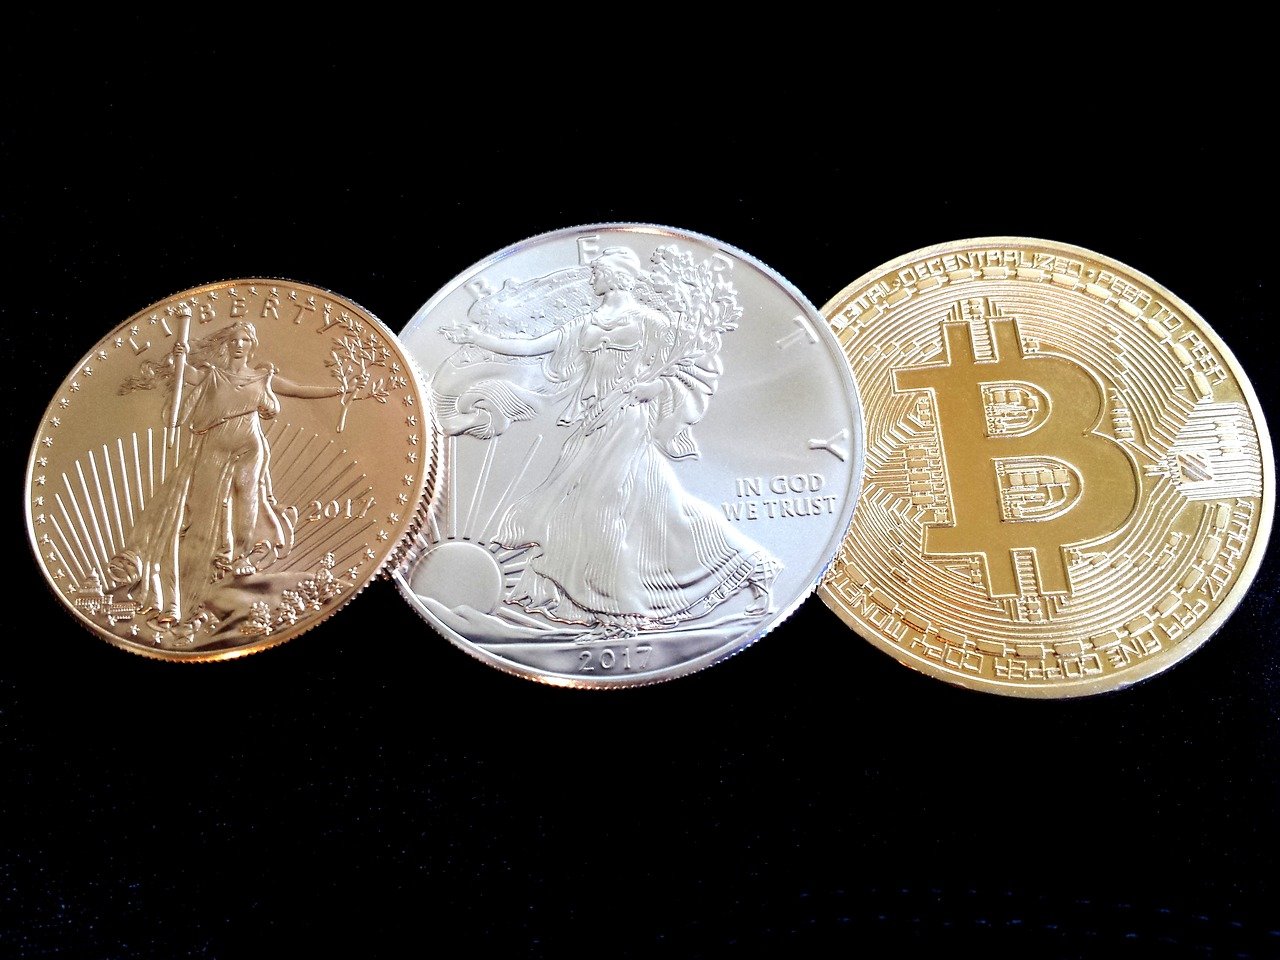 united states silver eagle gold coin bitcoin collectible coin